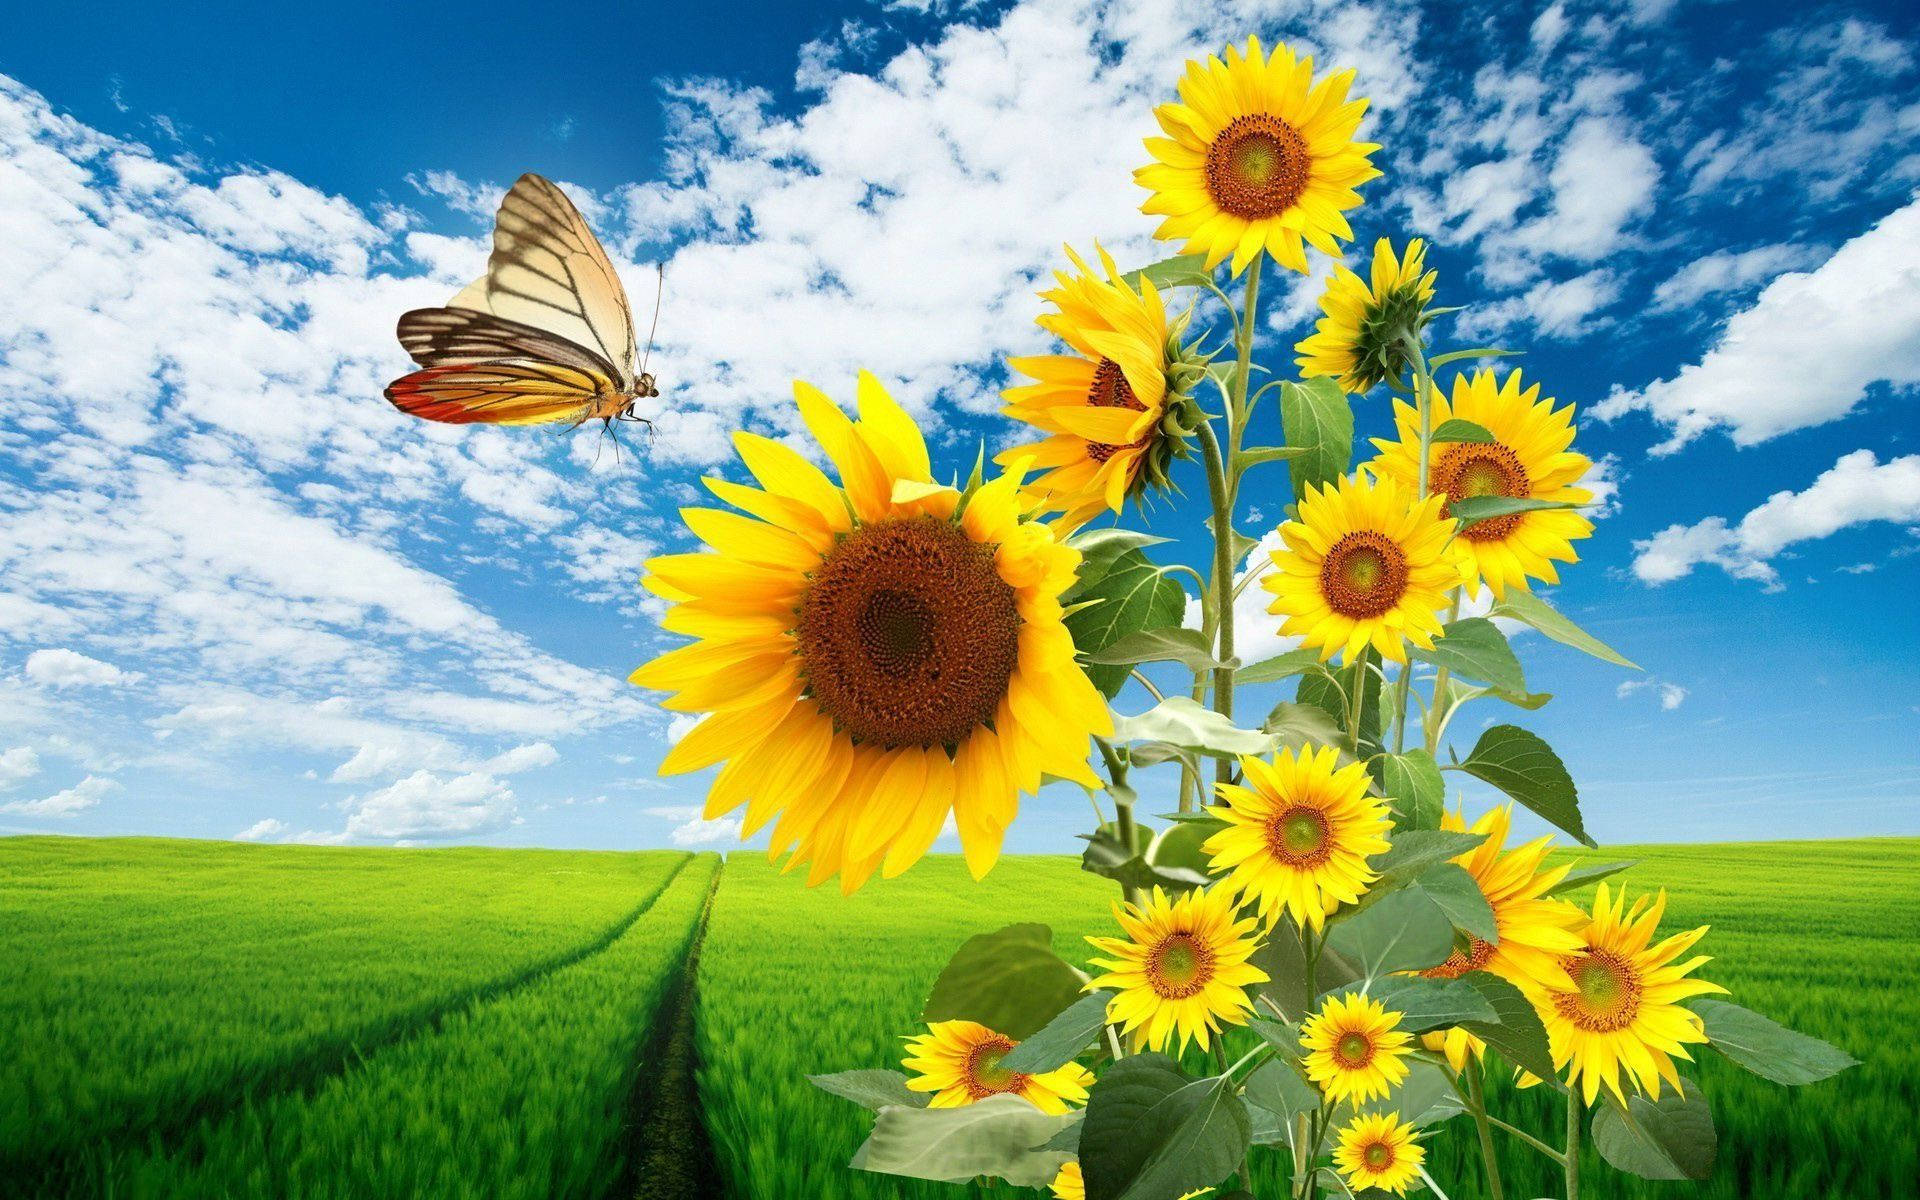 Sunflower Field Wallpaper Images